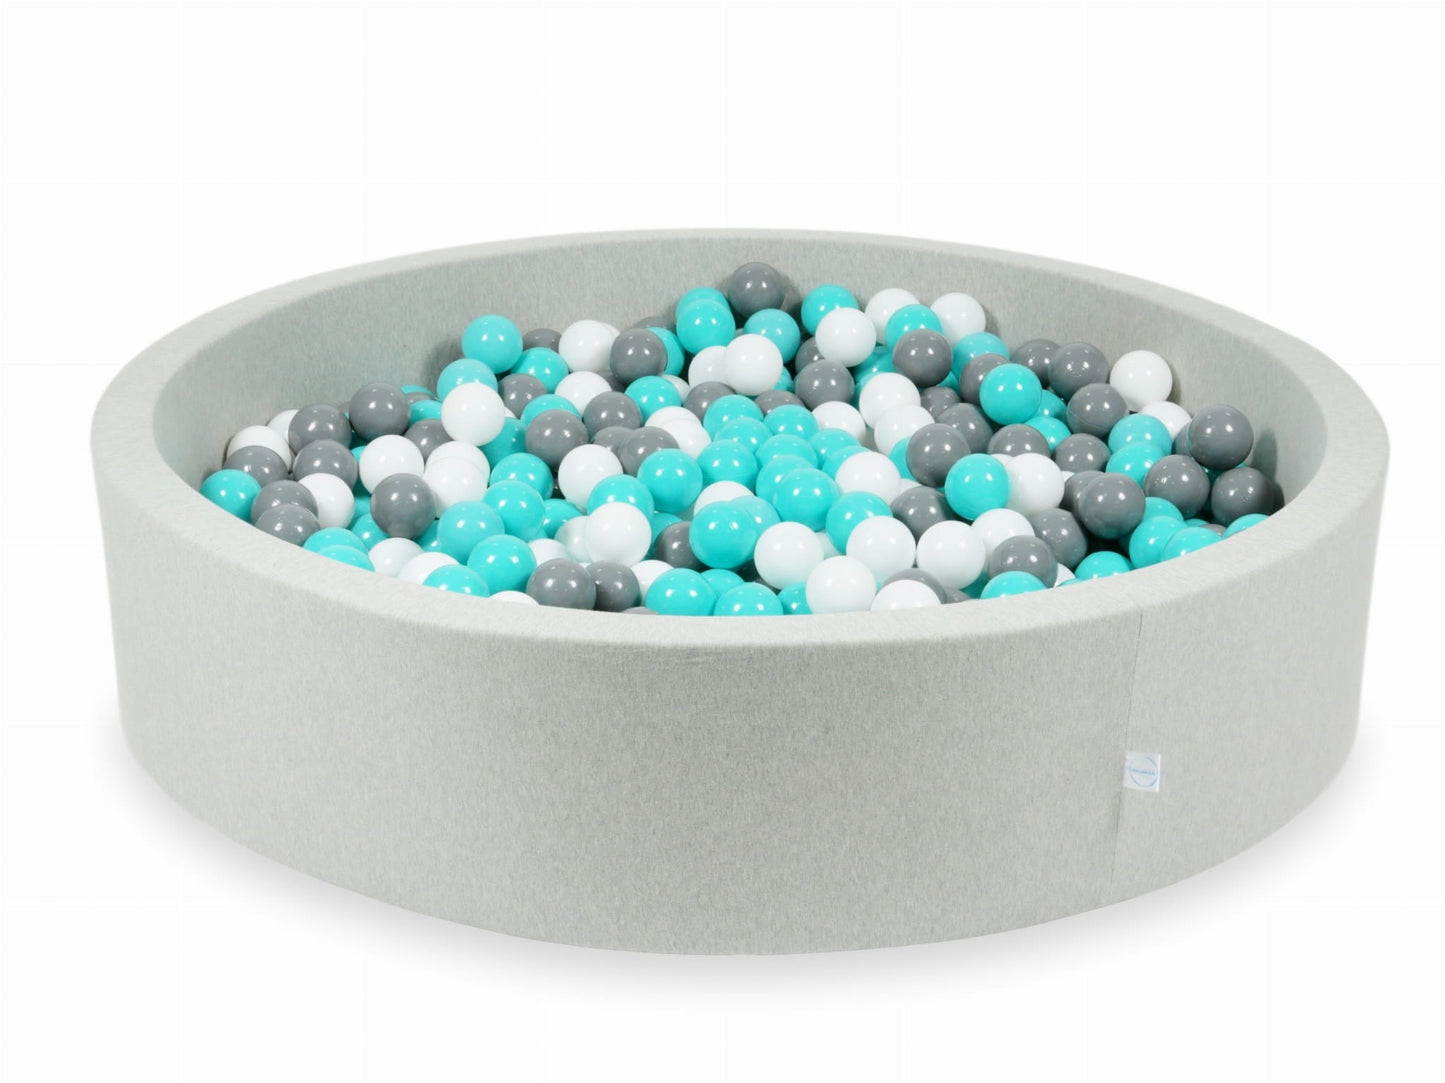 Piscine à Balles 130x30 gris clair avec balles 600 pcs (turquoise, blanc, gris)